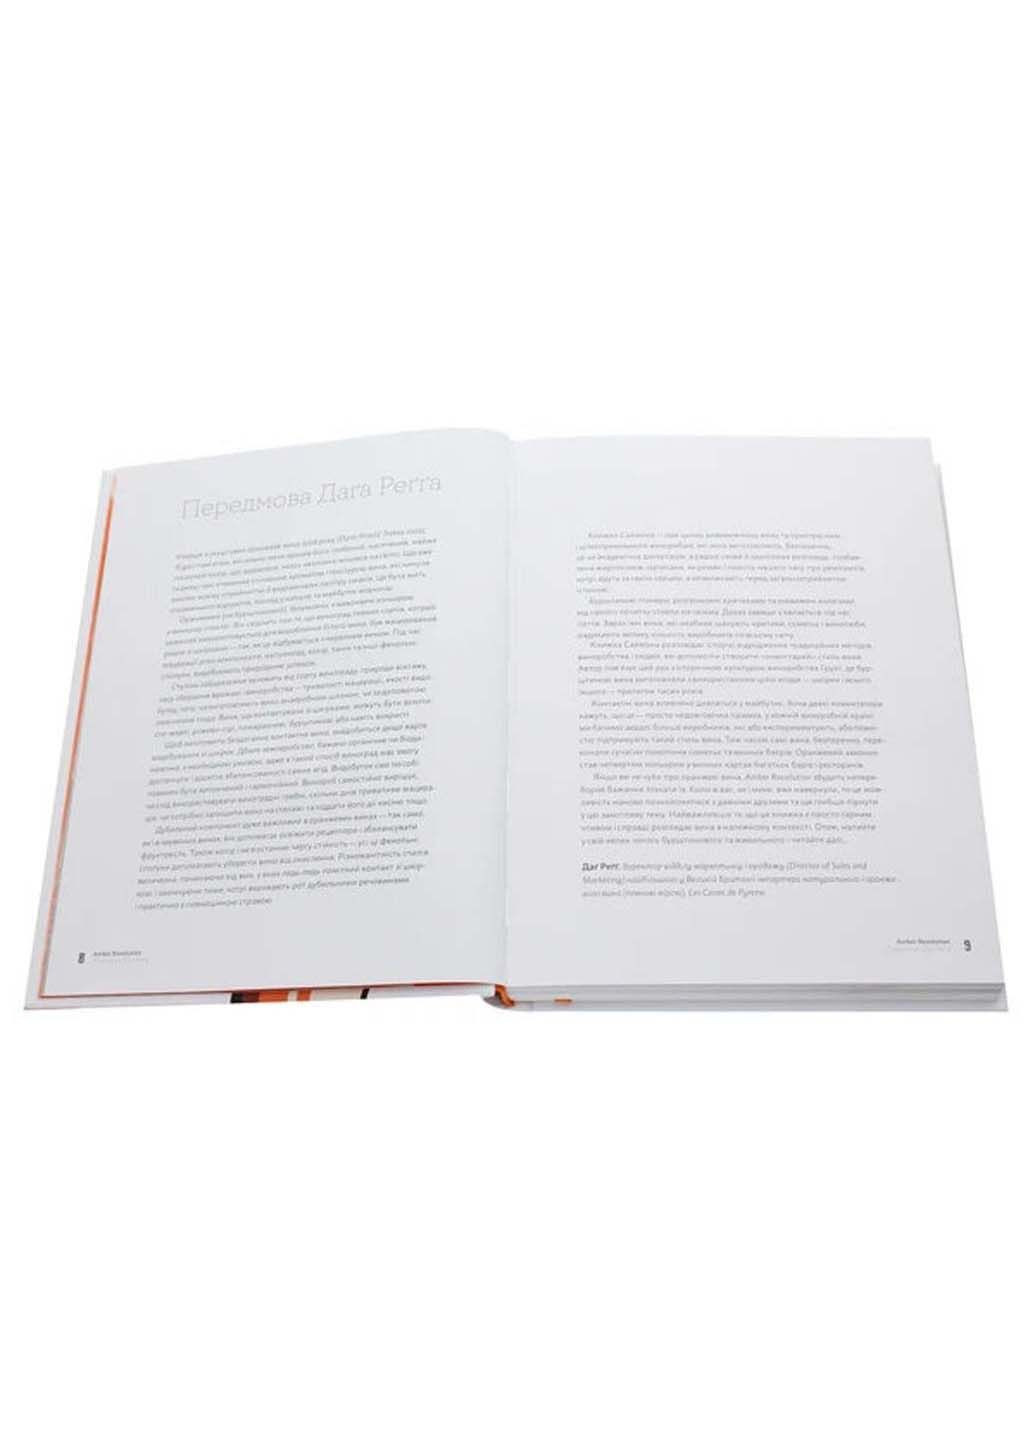 Книга Amber Revolution. Як світ закохався в оранжеве вино Саймон Вулф; Раян Опаз 2020р 304 с Yakaboo Publishing (293060867)